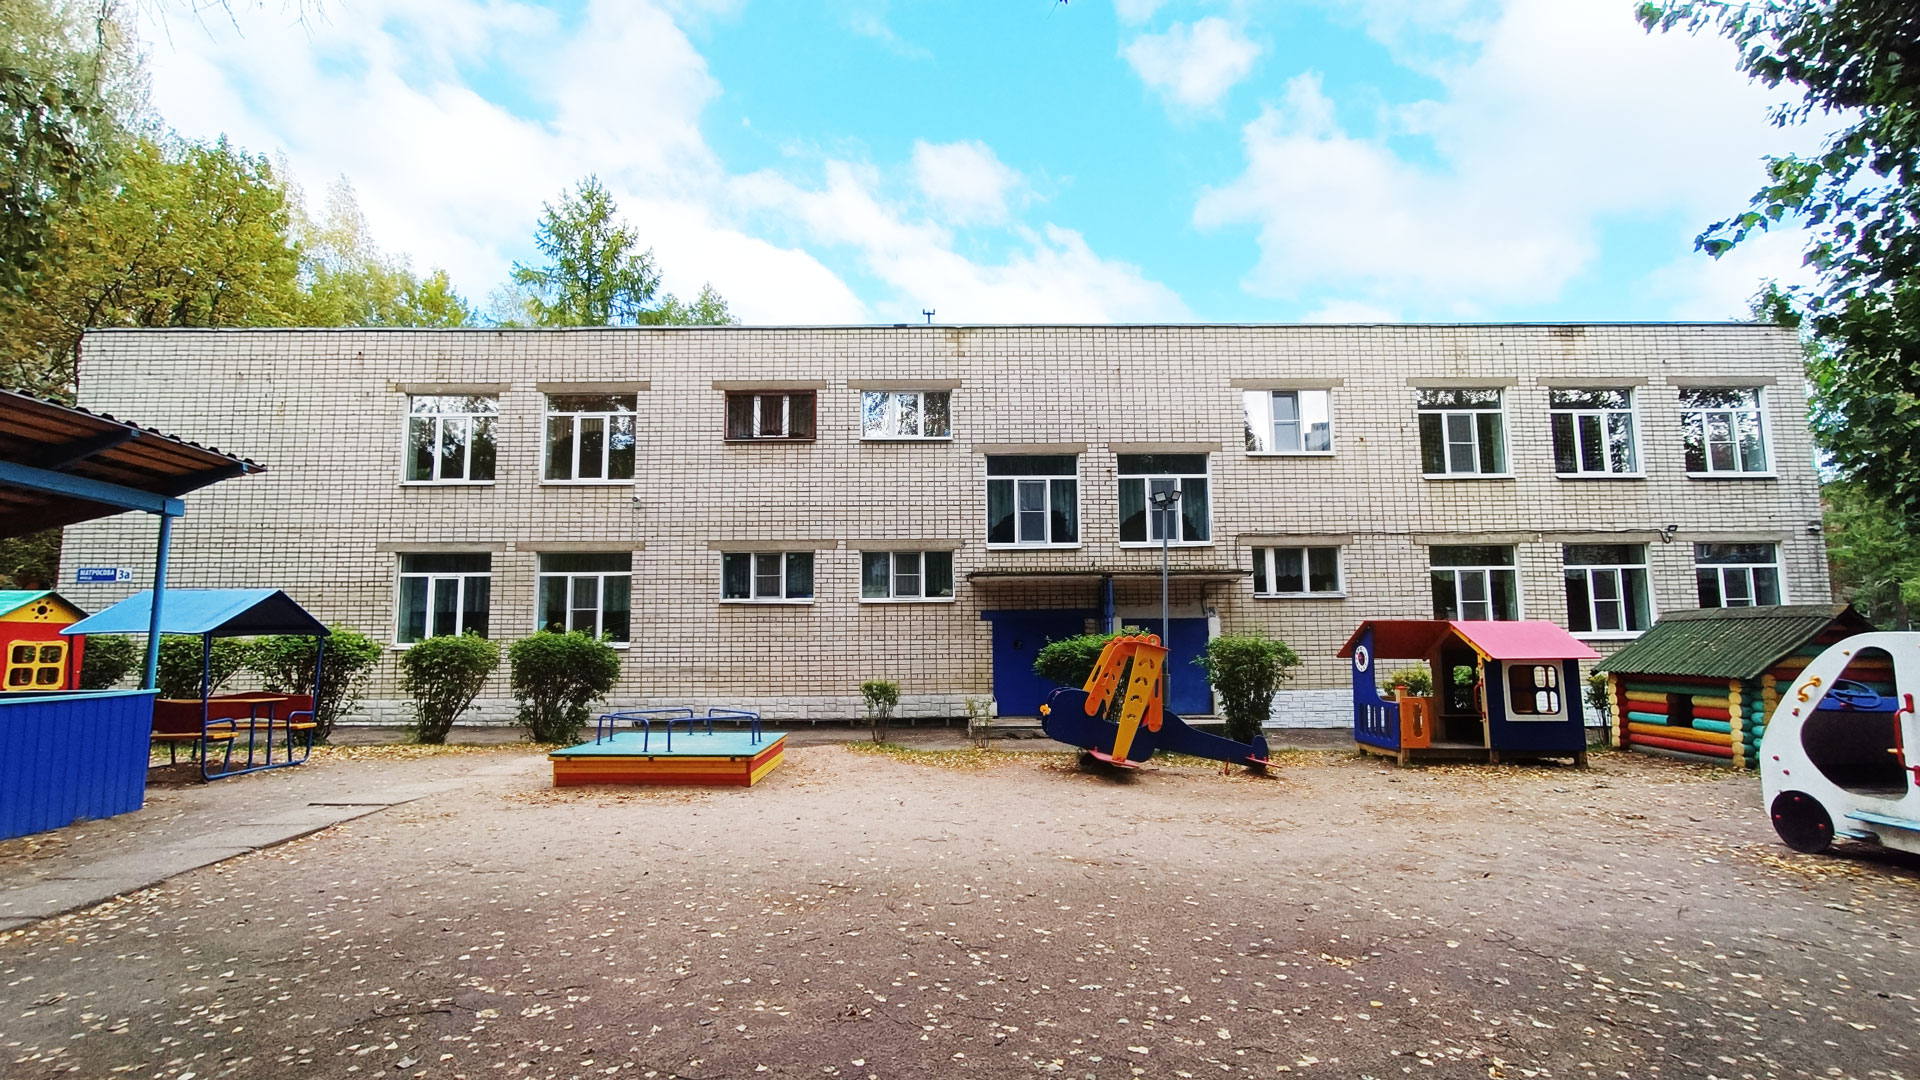 Детский сад 232 Ярославль: общий вид здания.